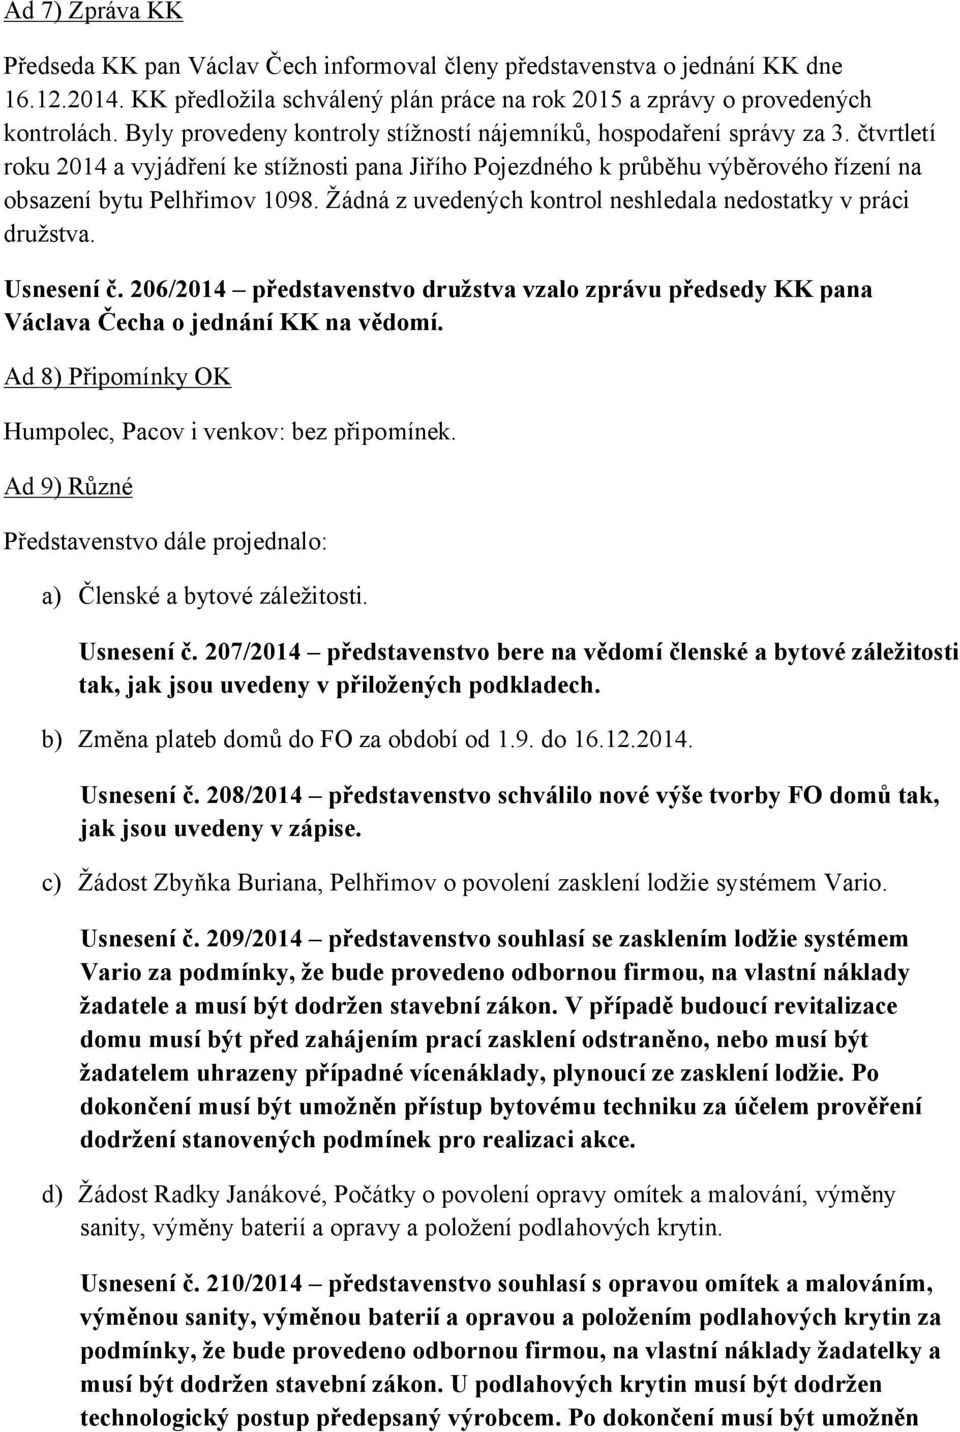 Žádná z uvedených kontrol neshledala nedostatky v práci družstva. Usnesení č. 206/2014 představenstvo družstva vzalo zprávu předsedy KK pana Václava Čecha o jednání KK na vědomí.